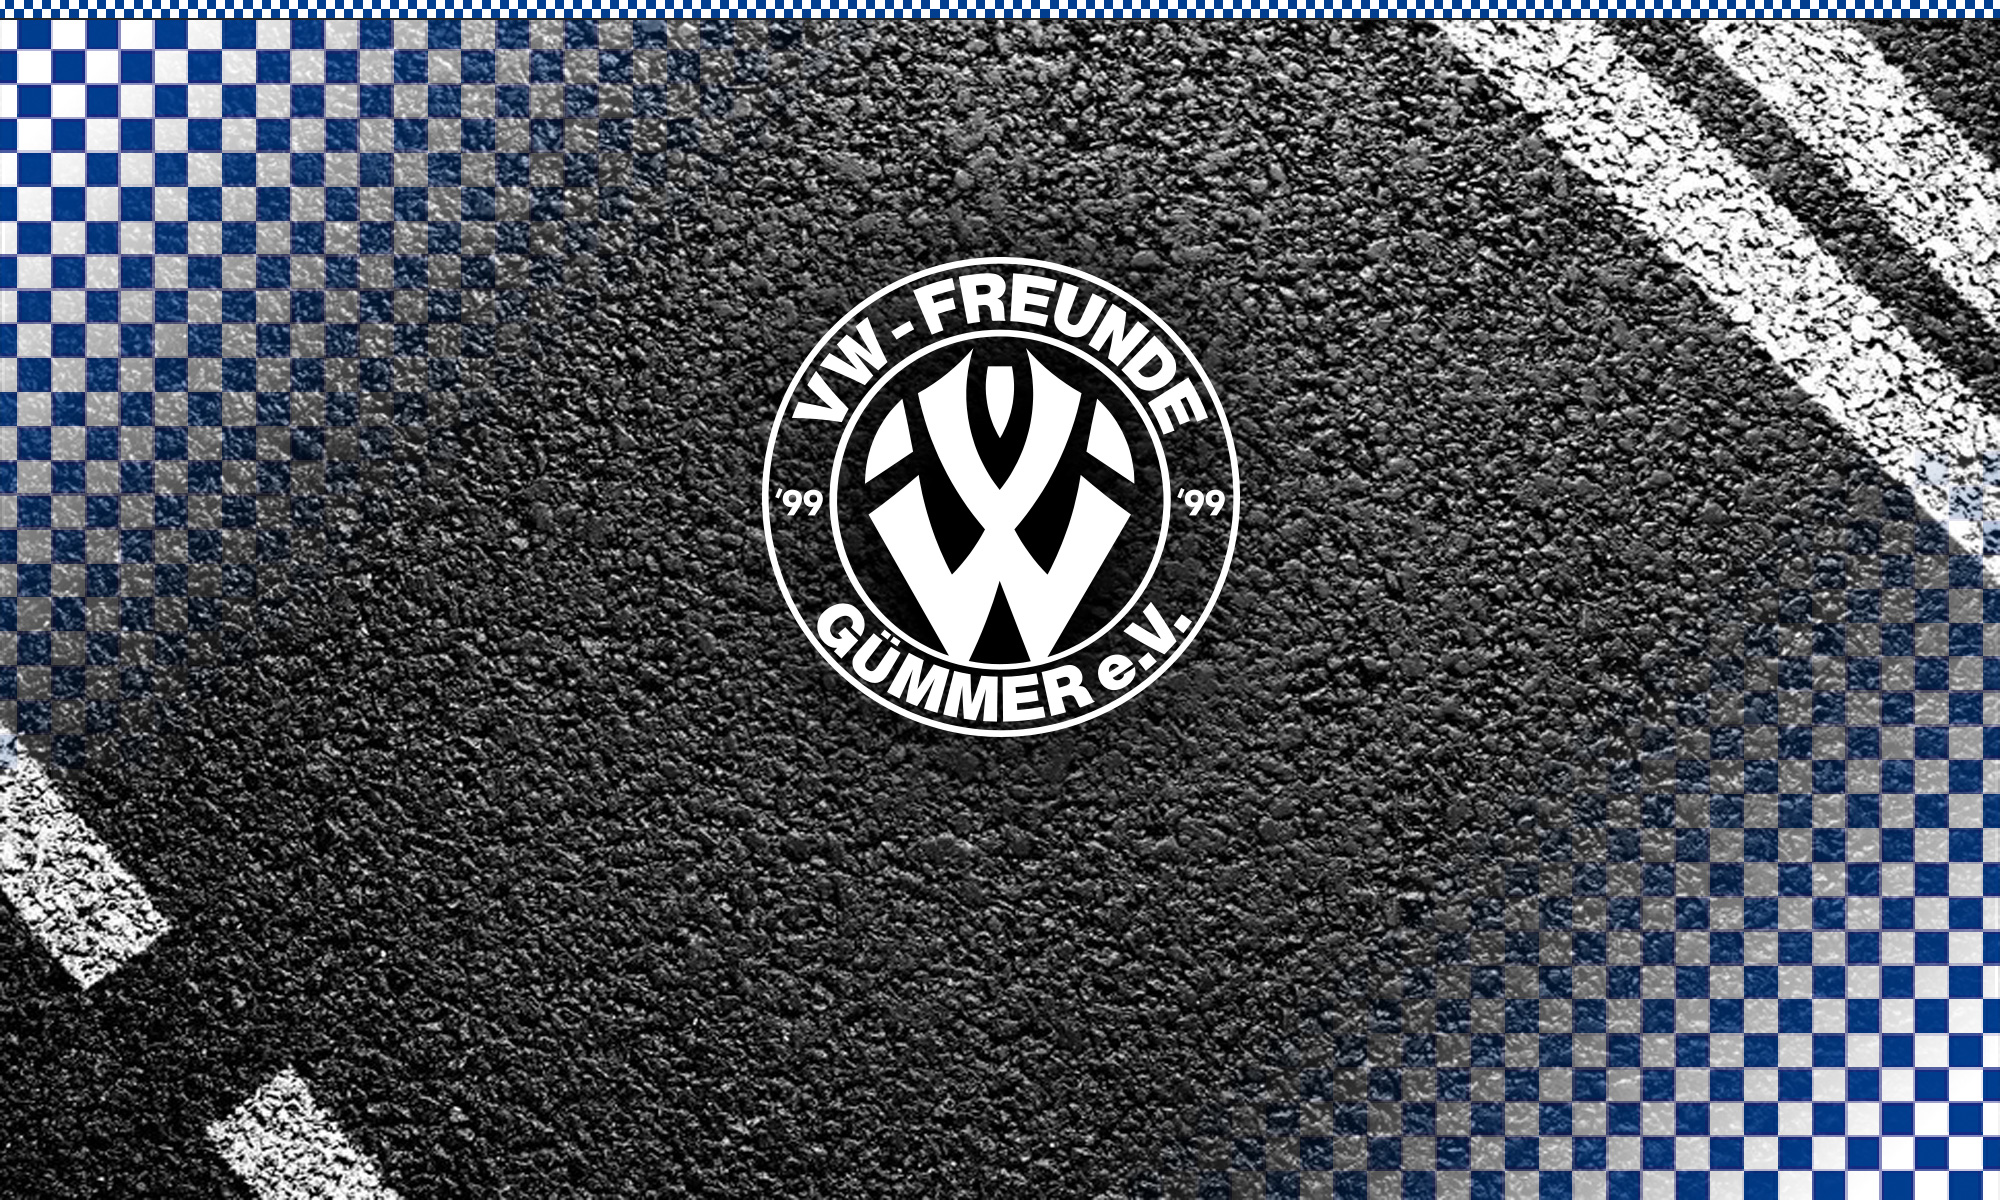 VW-Freunde-Gümmer